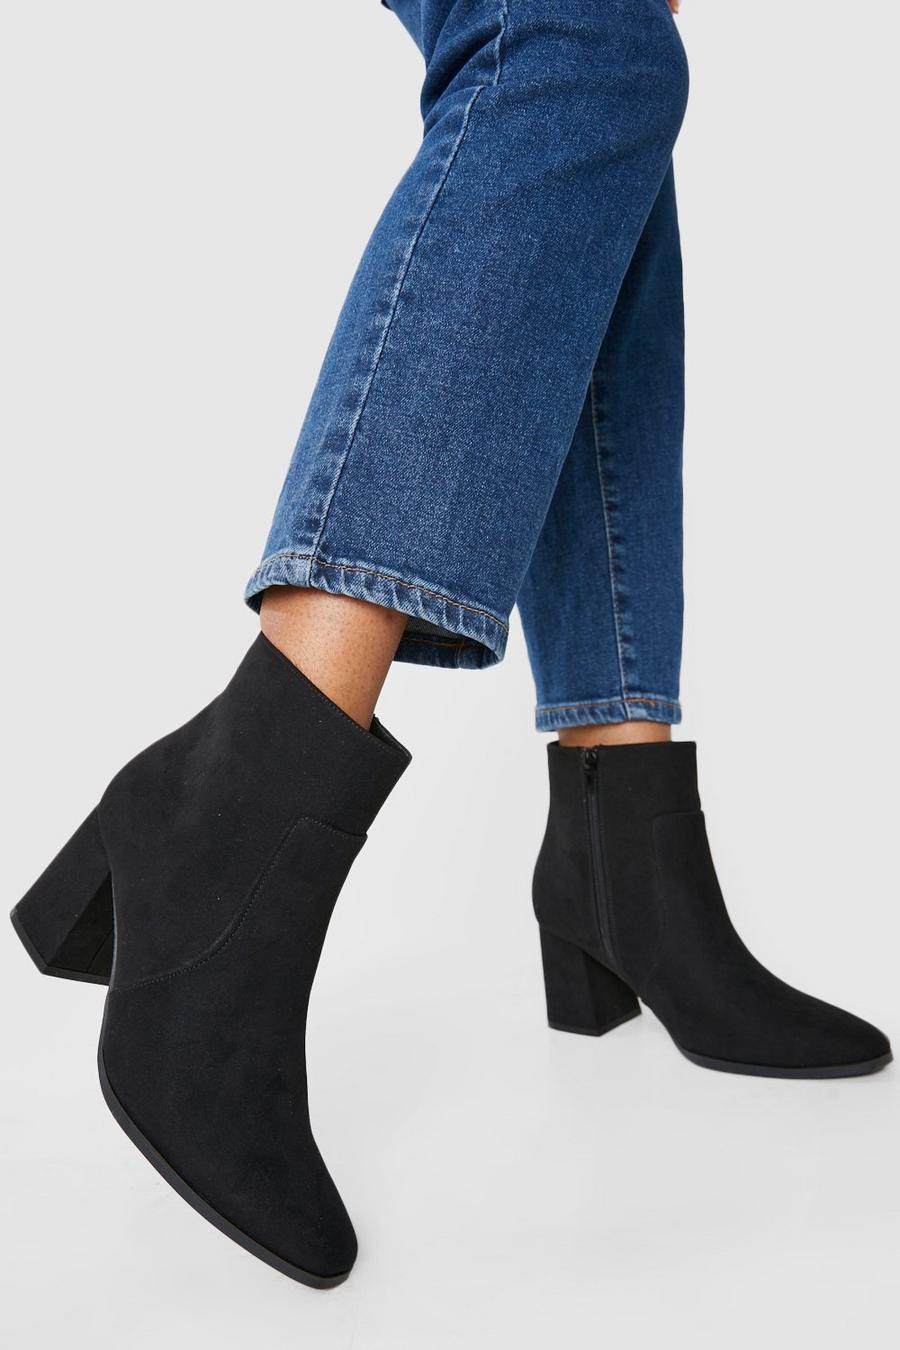 Black Wide Fit Block Heel Shoe Boots